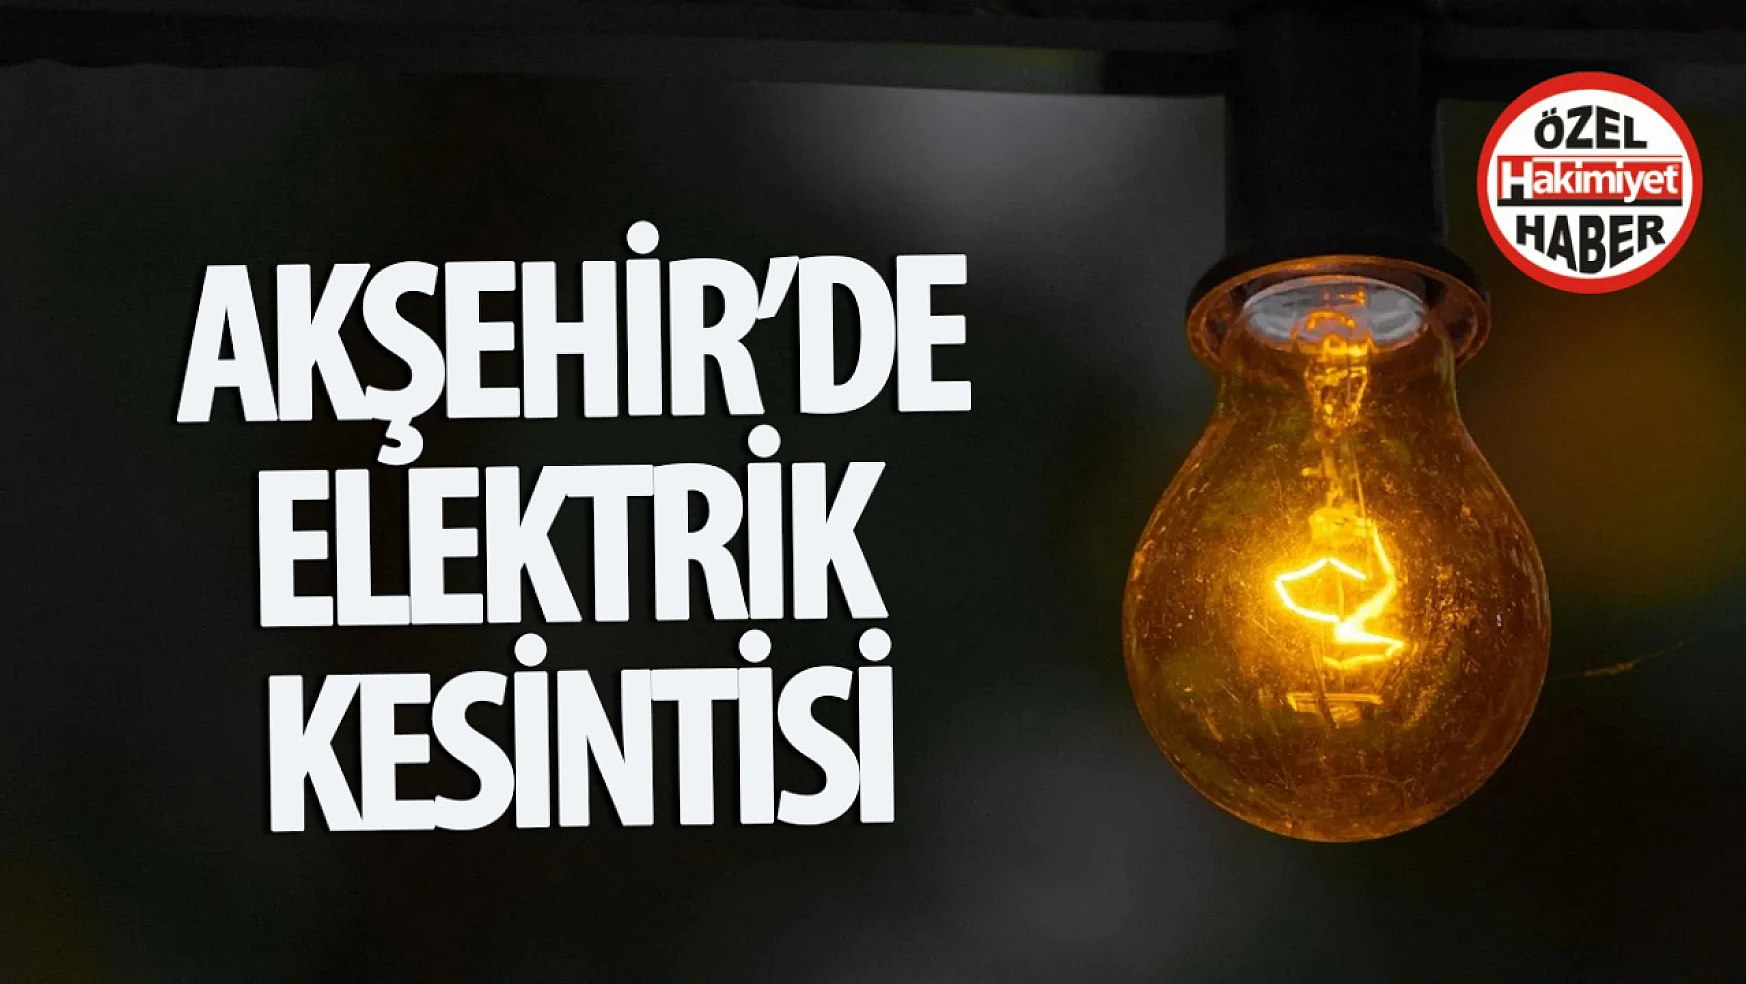 Akşehir'de Elektrik Kesintisi Uyarısı: 13 Nisan'da Planlı Bakım Çalışması